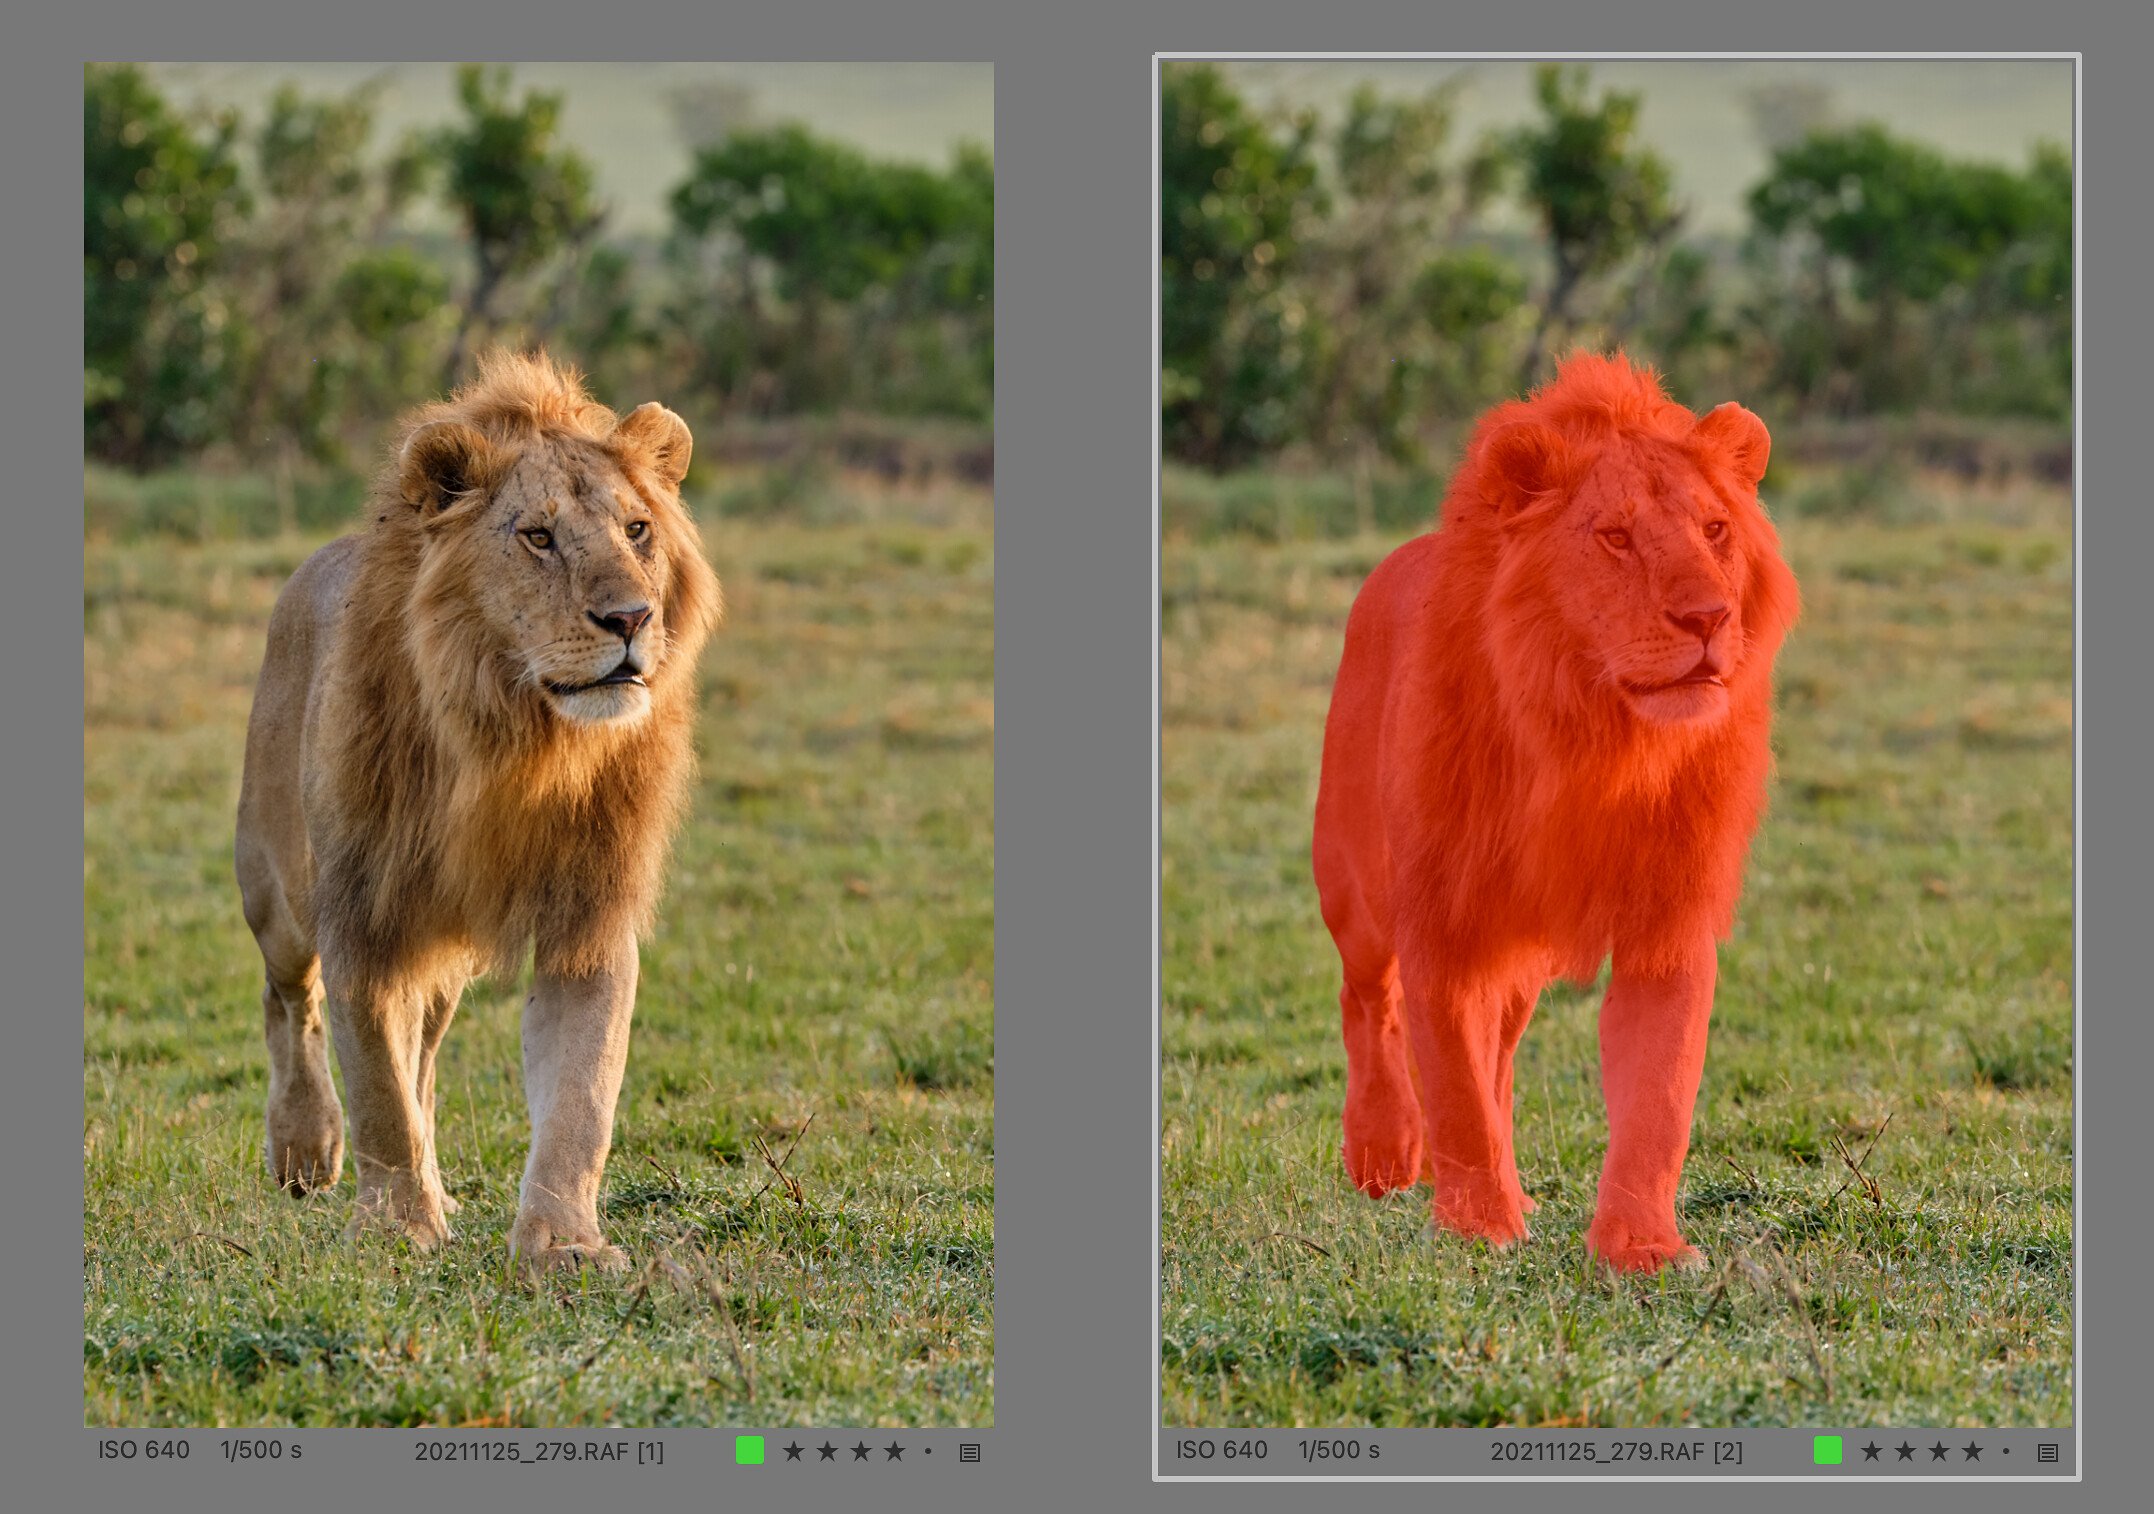 Ukázka výběru zvířete proti mírně rozostřenému pozadí – maska je perfektní včetně chlupů v hřívě lva 